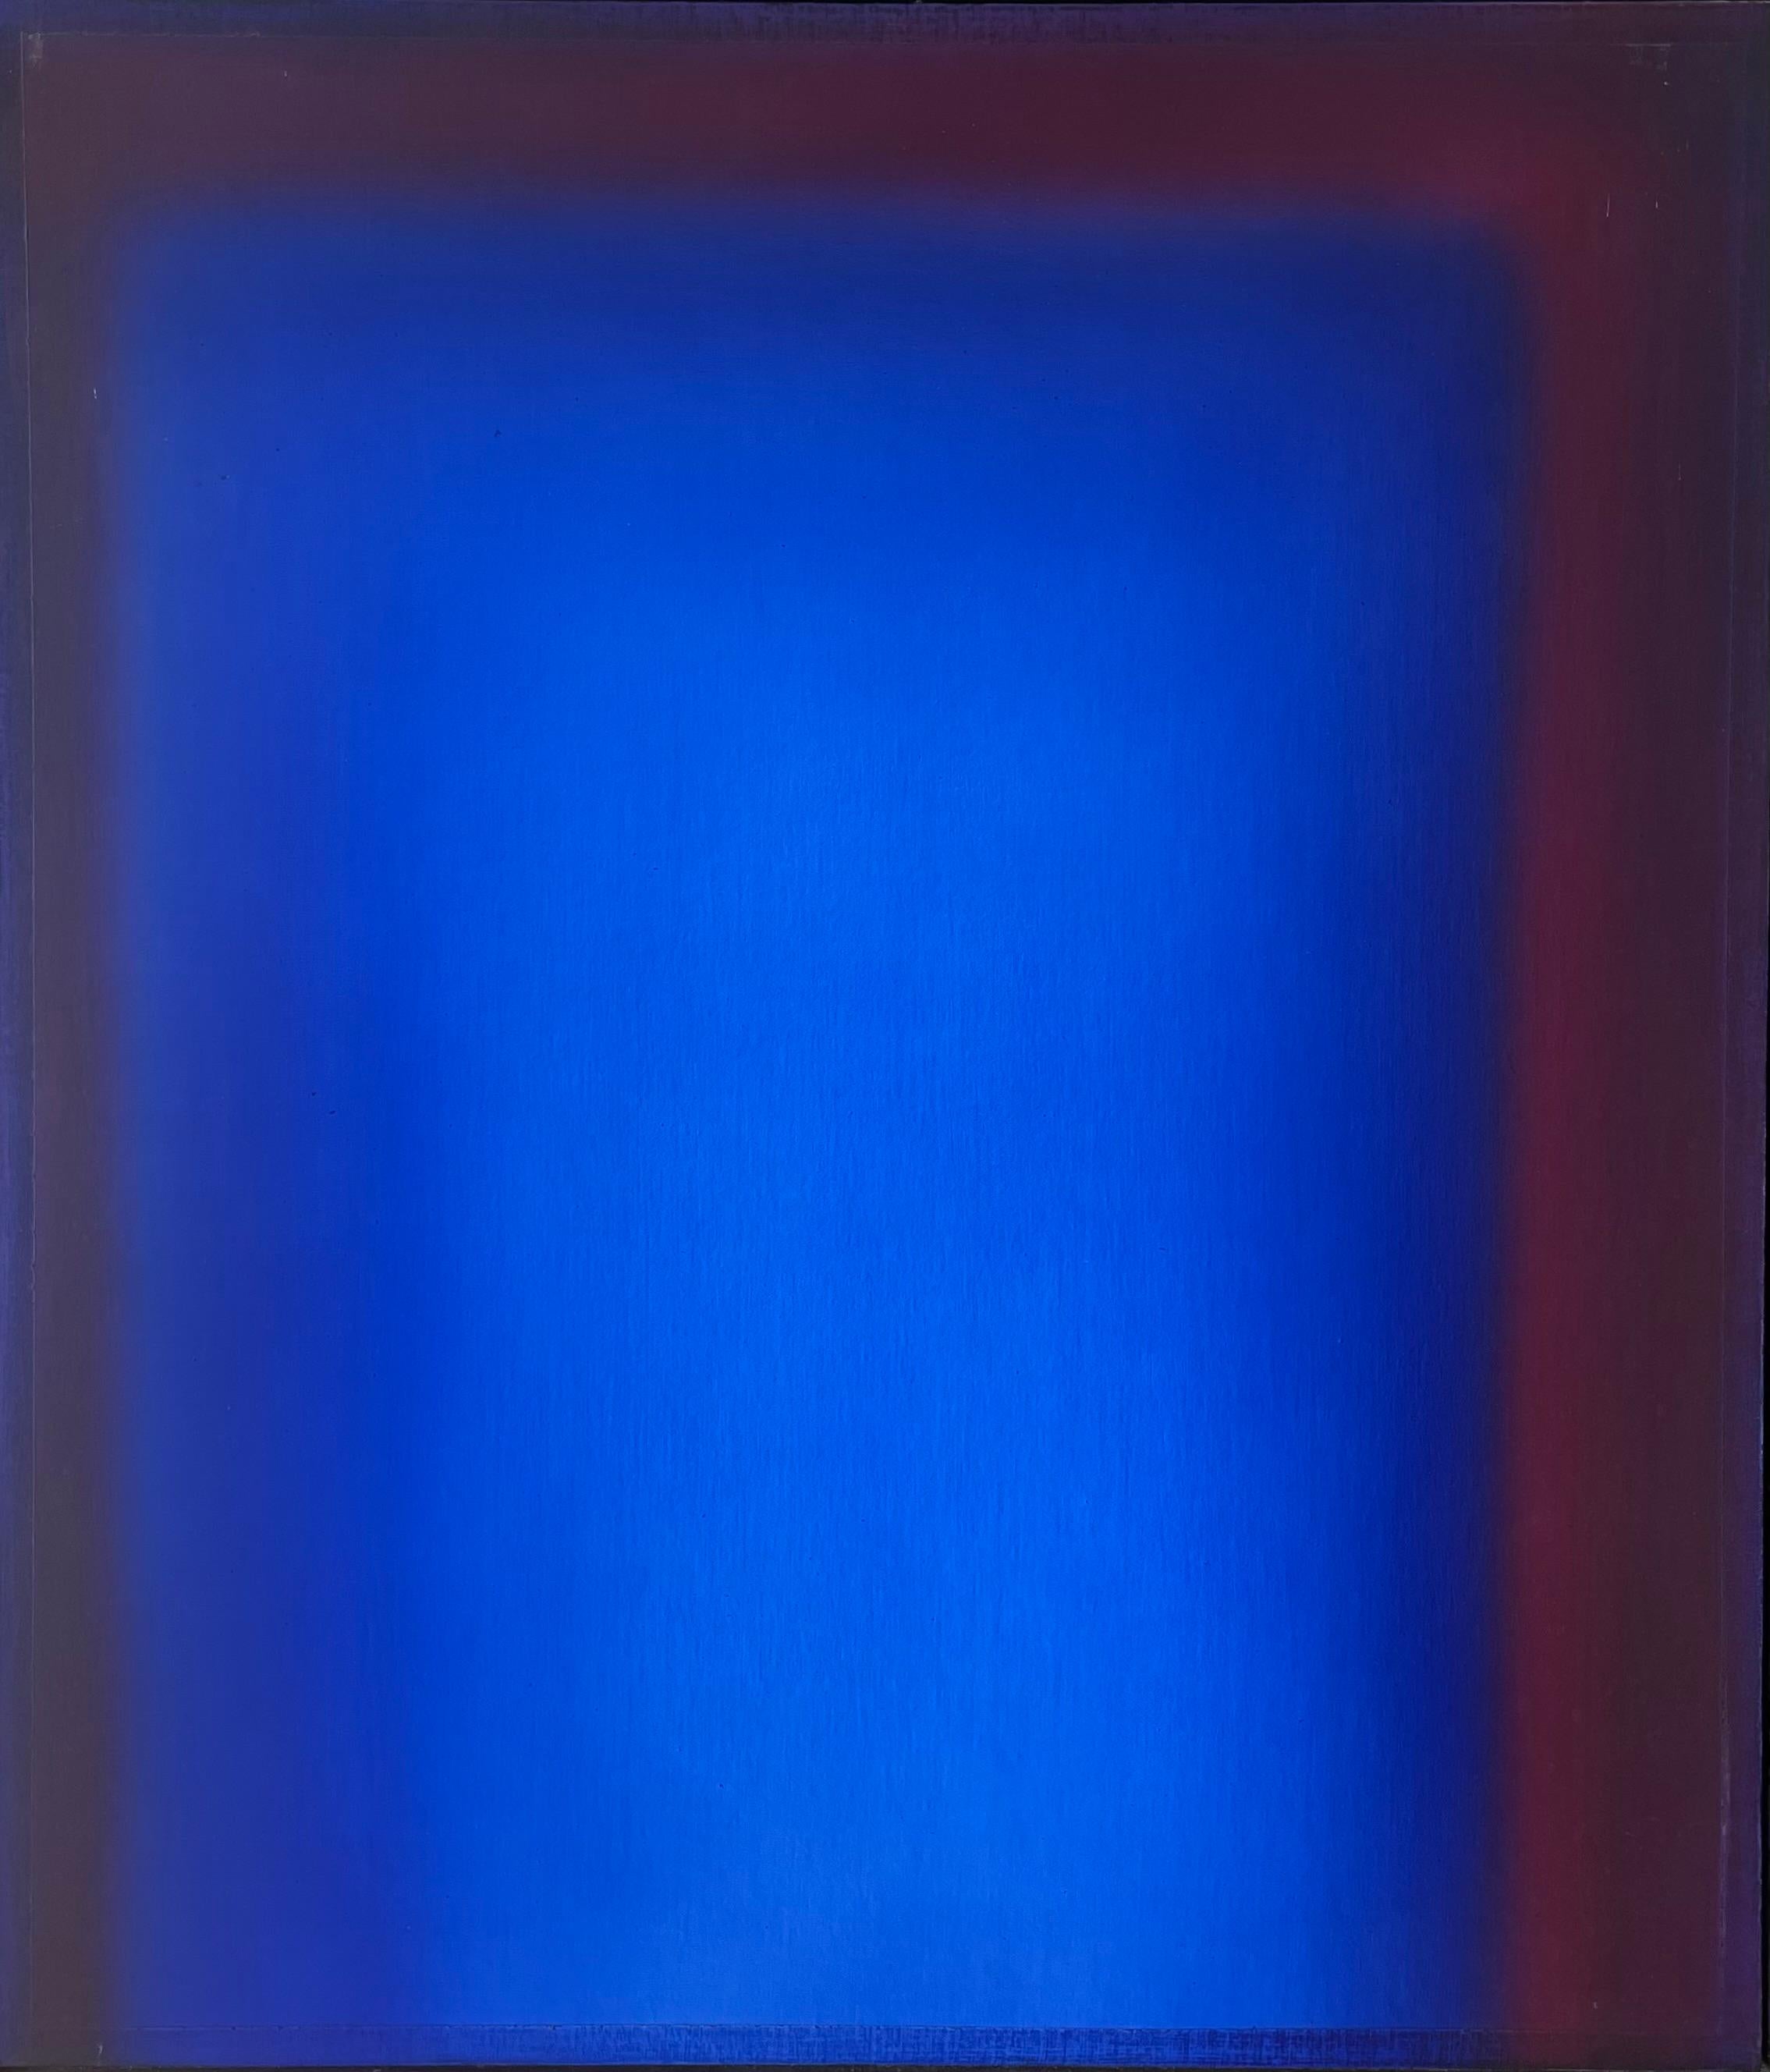 Sans titre - Bleu, marron et violet - Peinture magique - Painting de Eric Orr